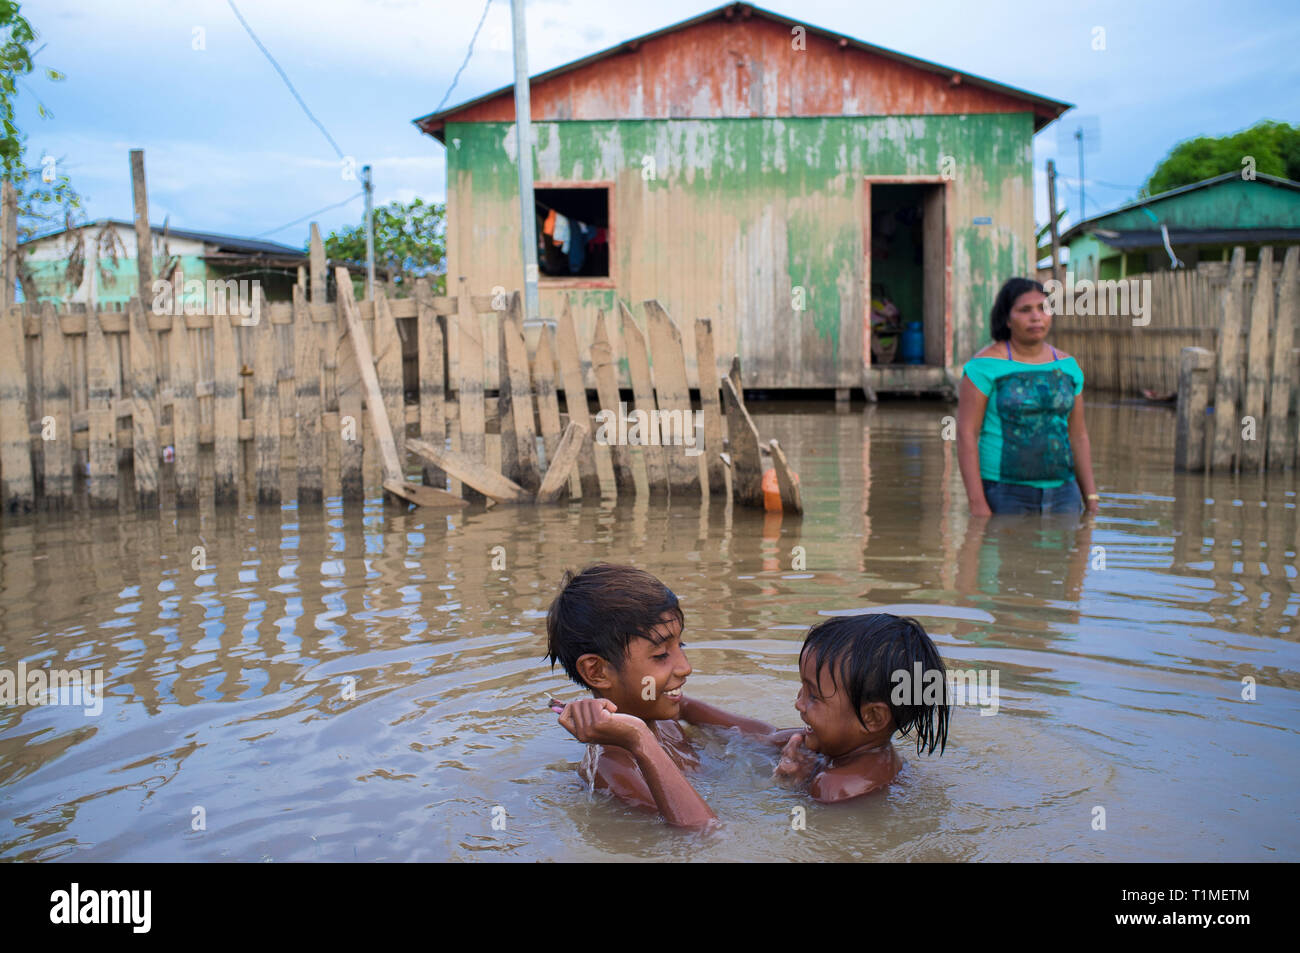 2015 Inondations en Amazonie brésilienne - les enfants jouent dans les eaux de la rivière acre de terre à Taquari, district de la ville de Rio Branco, l'état d'Acre. Les inondations ont touché des milliers de personnes dans l'Etat d'Acre, dans le nord du Brésil, depuis le 23 février 2015, lorsque certaines des rivières de l'état, en particulier l'Acre, la rivière a débordé. De plus fortes précipitations a forcé les niveaux de la rivière plus haut encore, et le 03 mars 2015, le gouvernement fédéral du Brésil a déclaré l'état d'urgence dans l'état d'Acre, où les conditions d'inondations situation a été décrite comme la pire en 132 ans. Banque D'Images